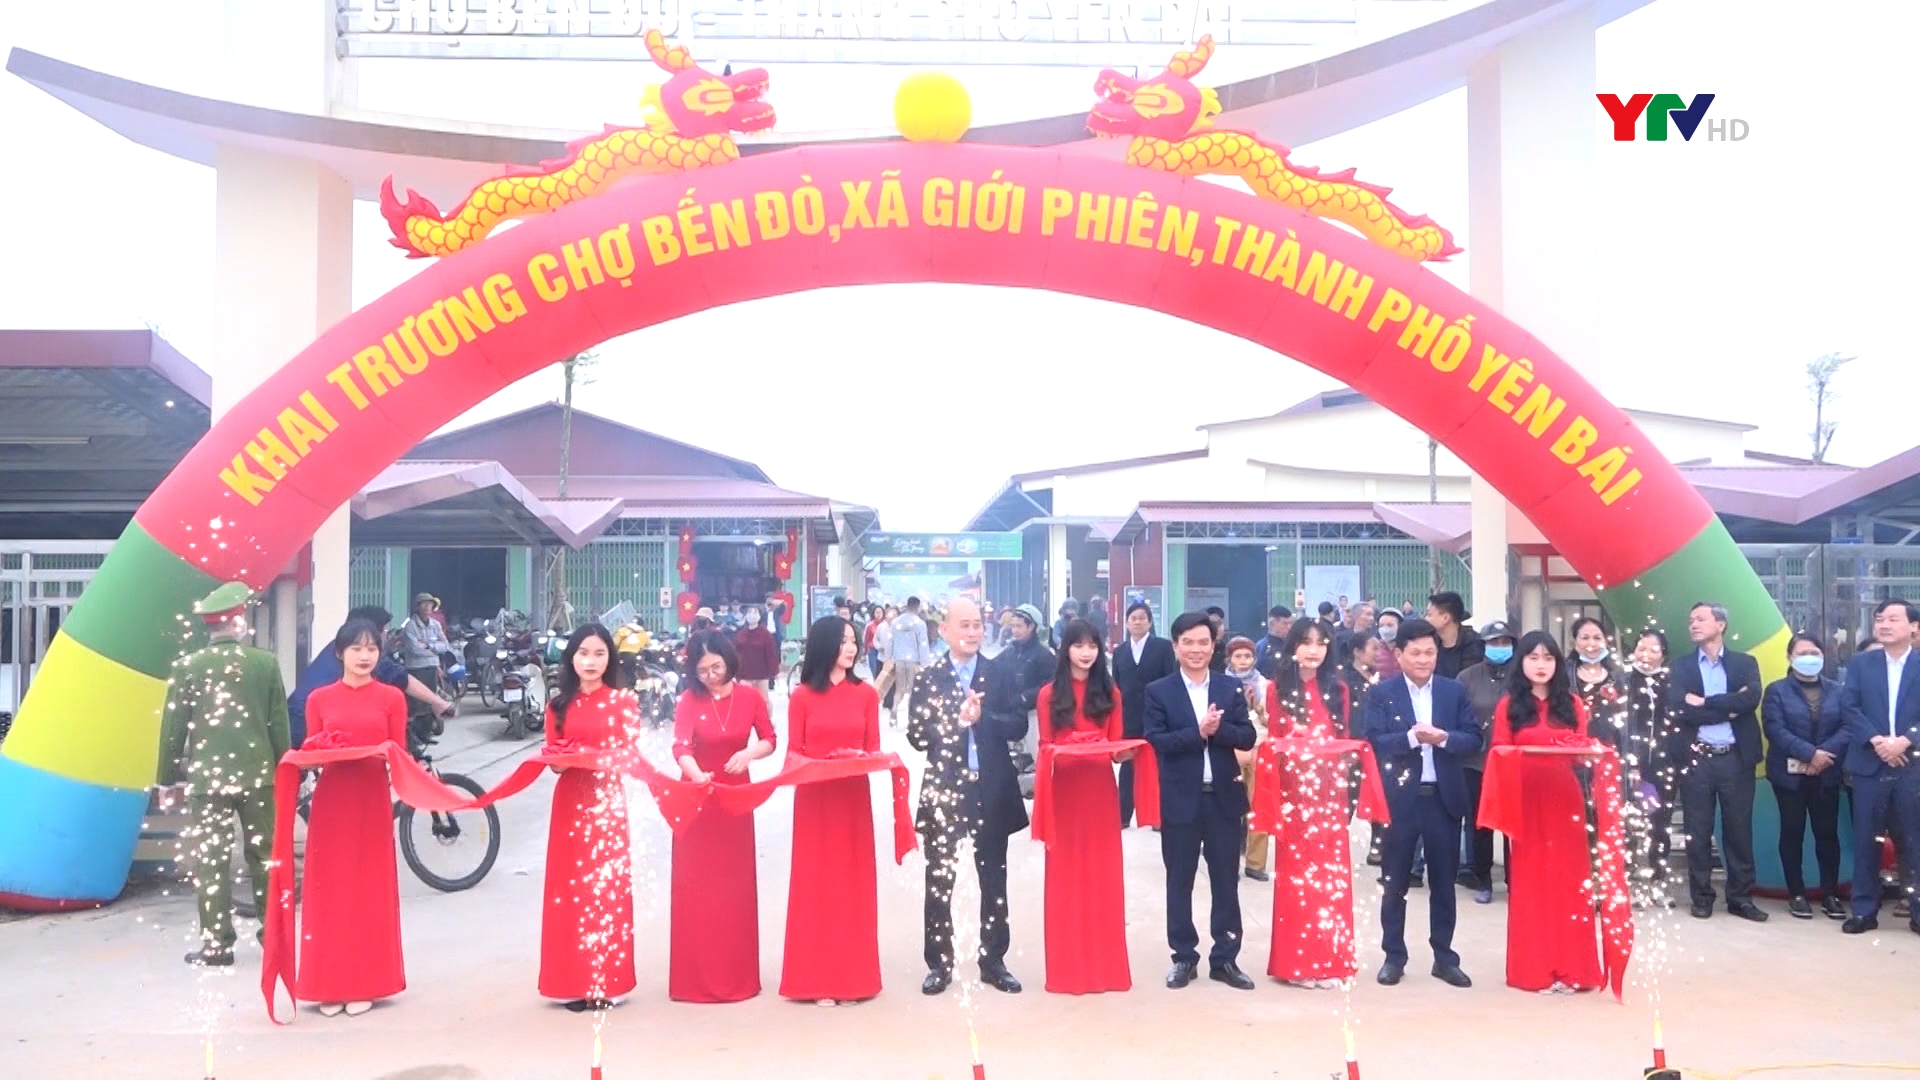 Chợ Bến Đò, xã Giới Phiên, thành phố Yên Bái chính thức đi vào hoạt động